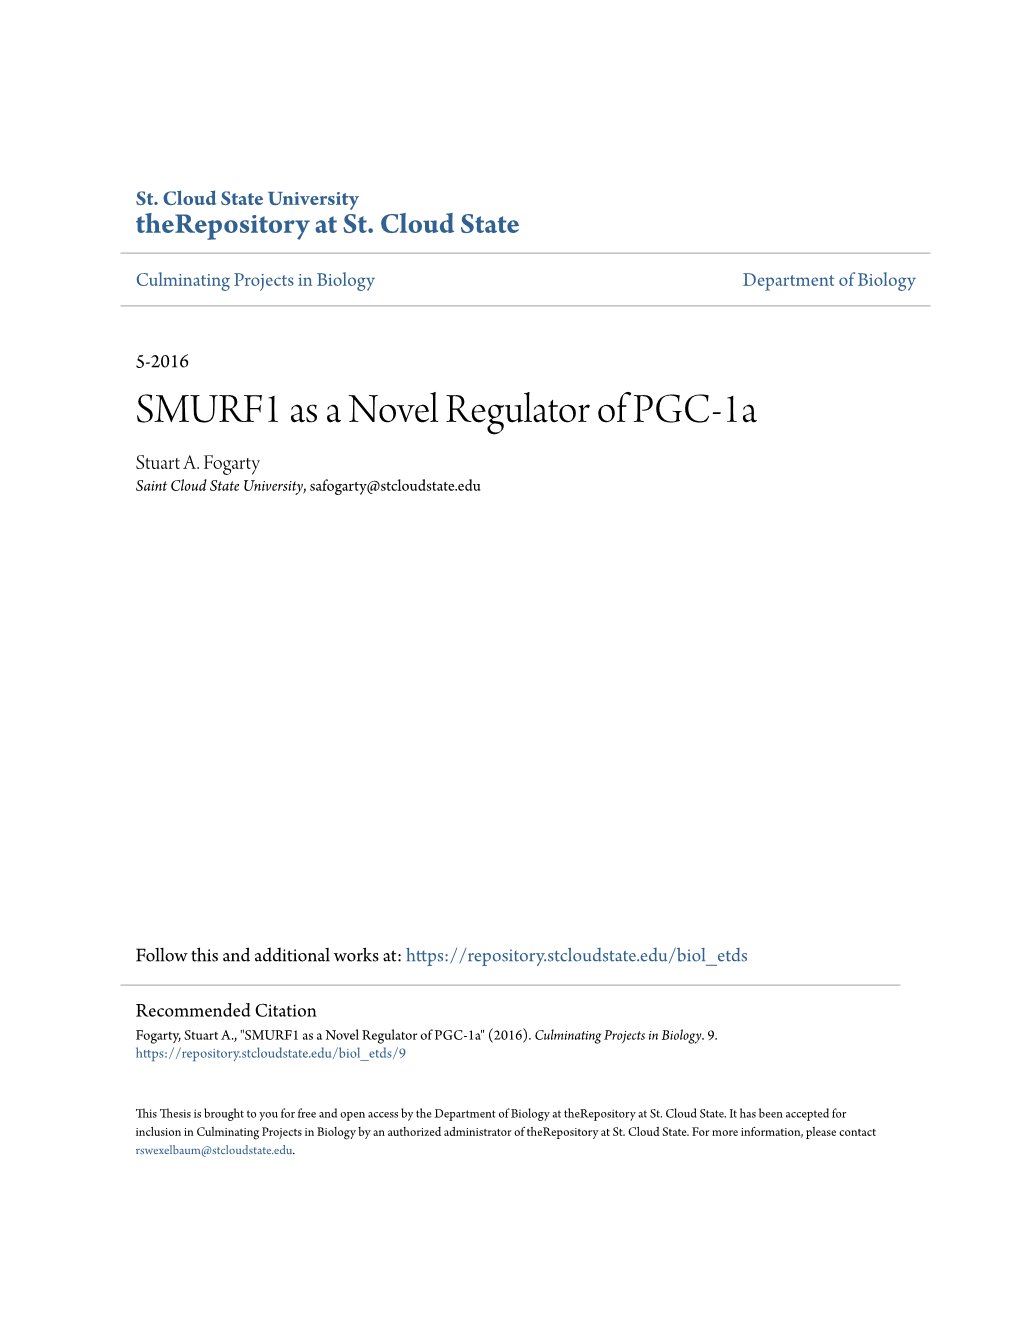 SMURF1 As a Novel Regulator of PGC-1A Stuart A